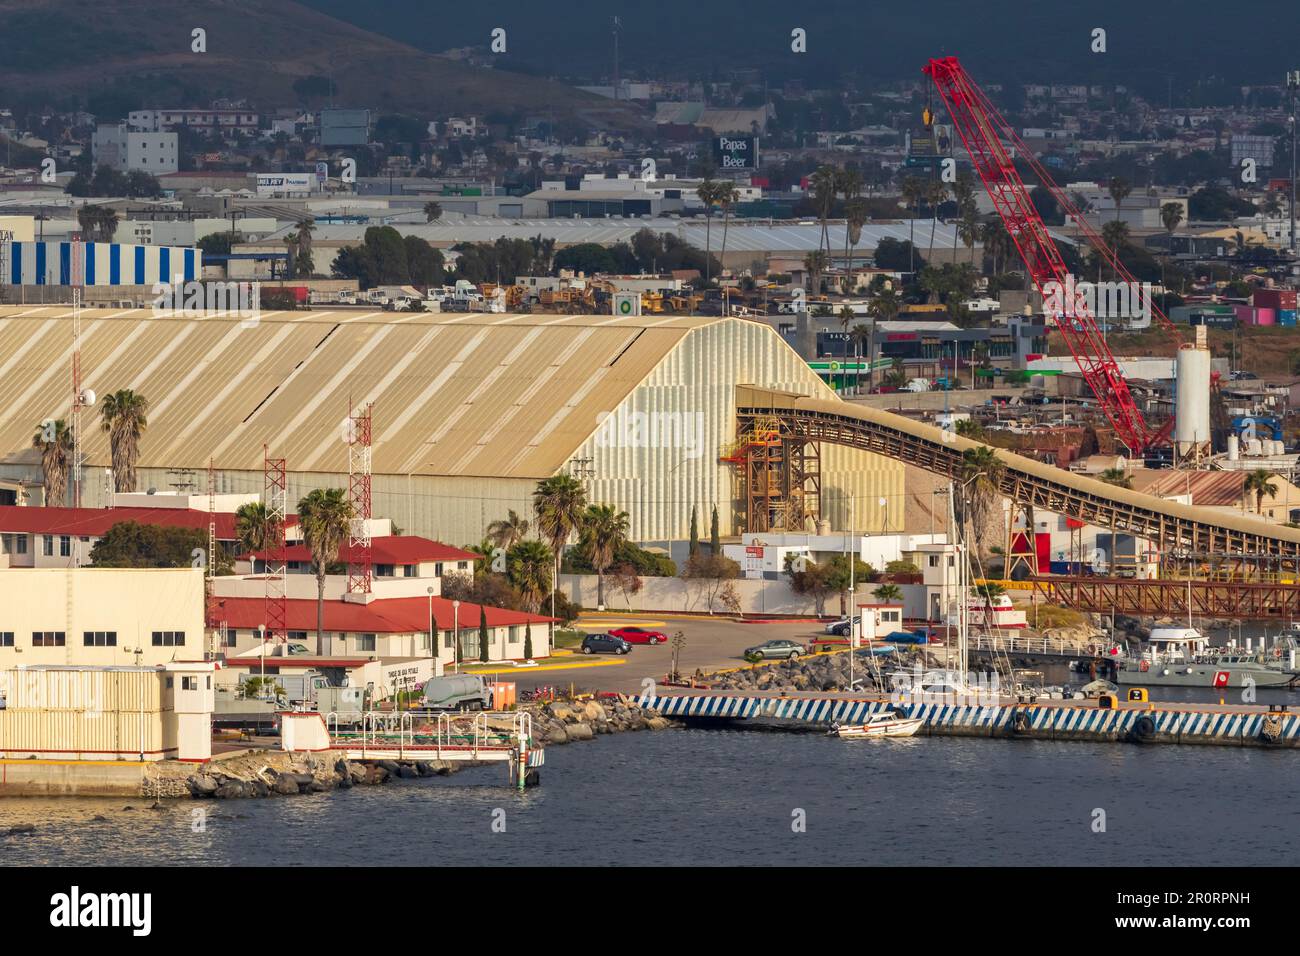 Mexican Navy Base, Port of Ensenada, Baja California, Mexico Stock Photo